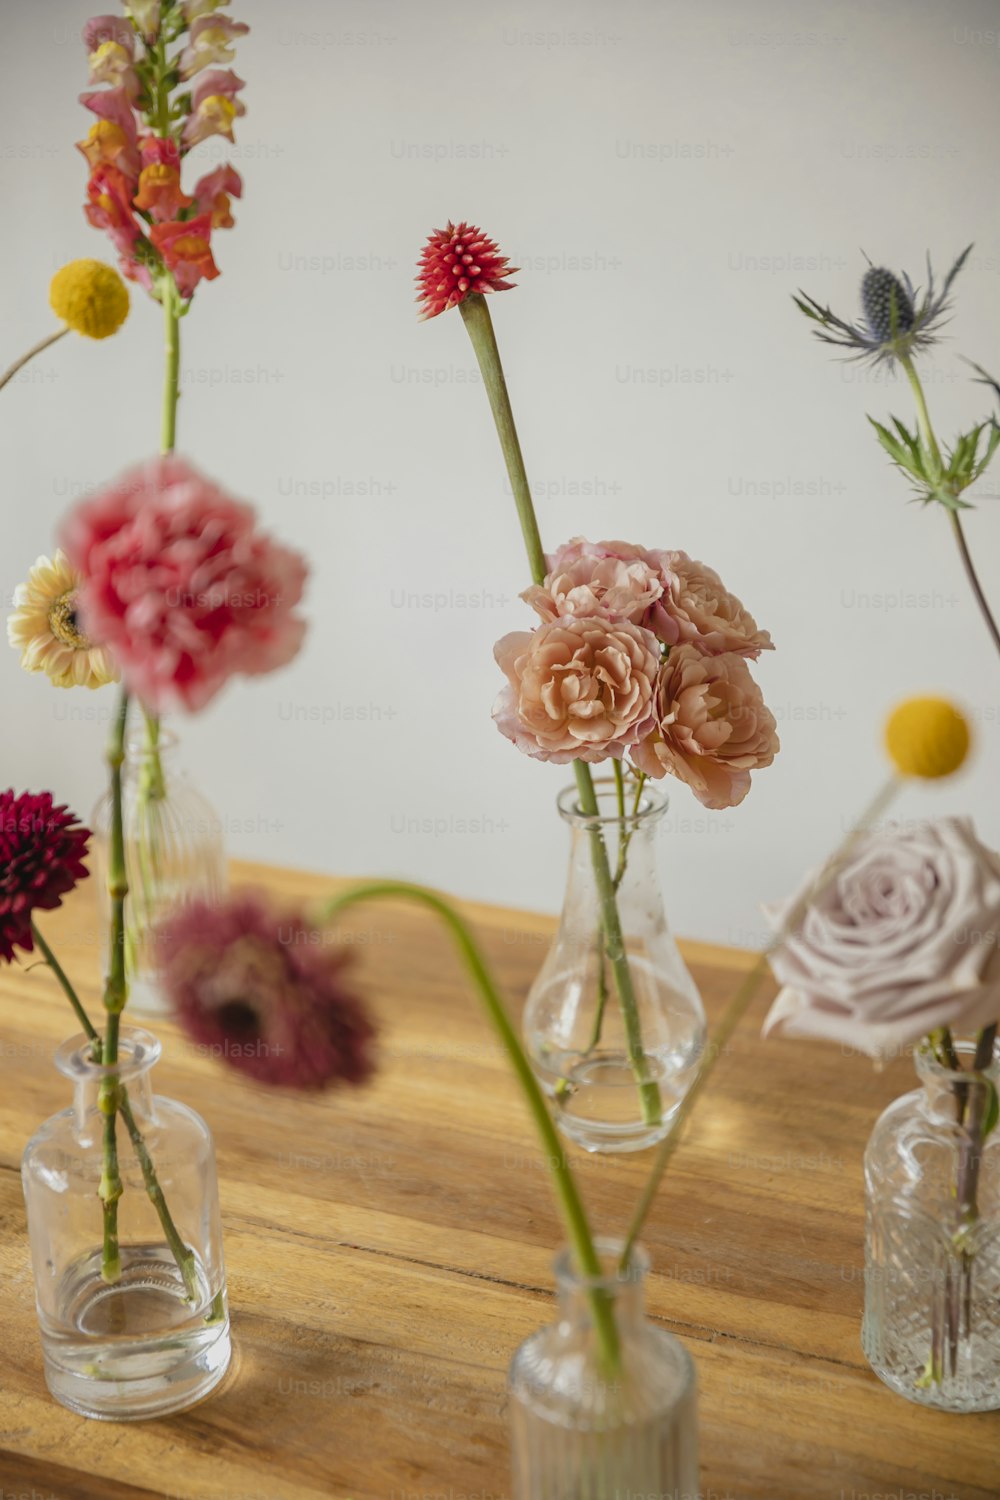 1K+ Floral Design Pictures  Download Free Images on Unsplash